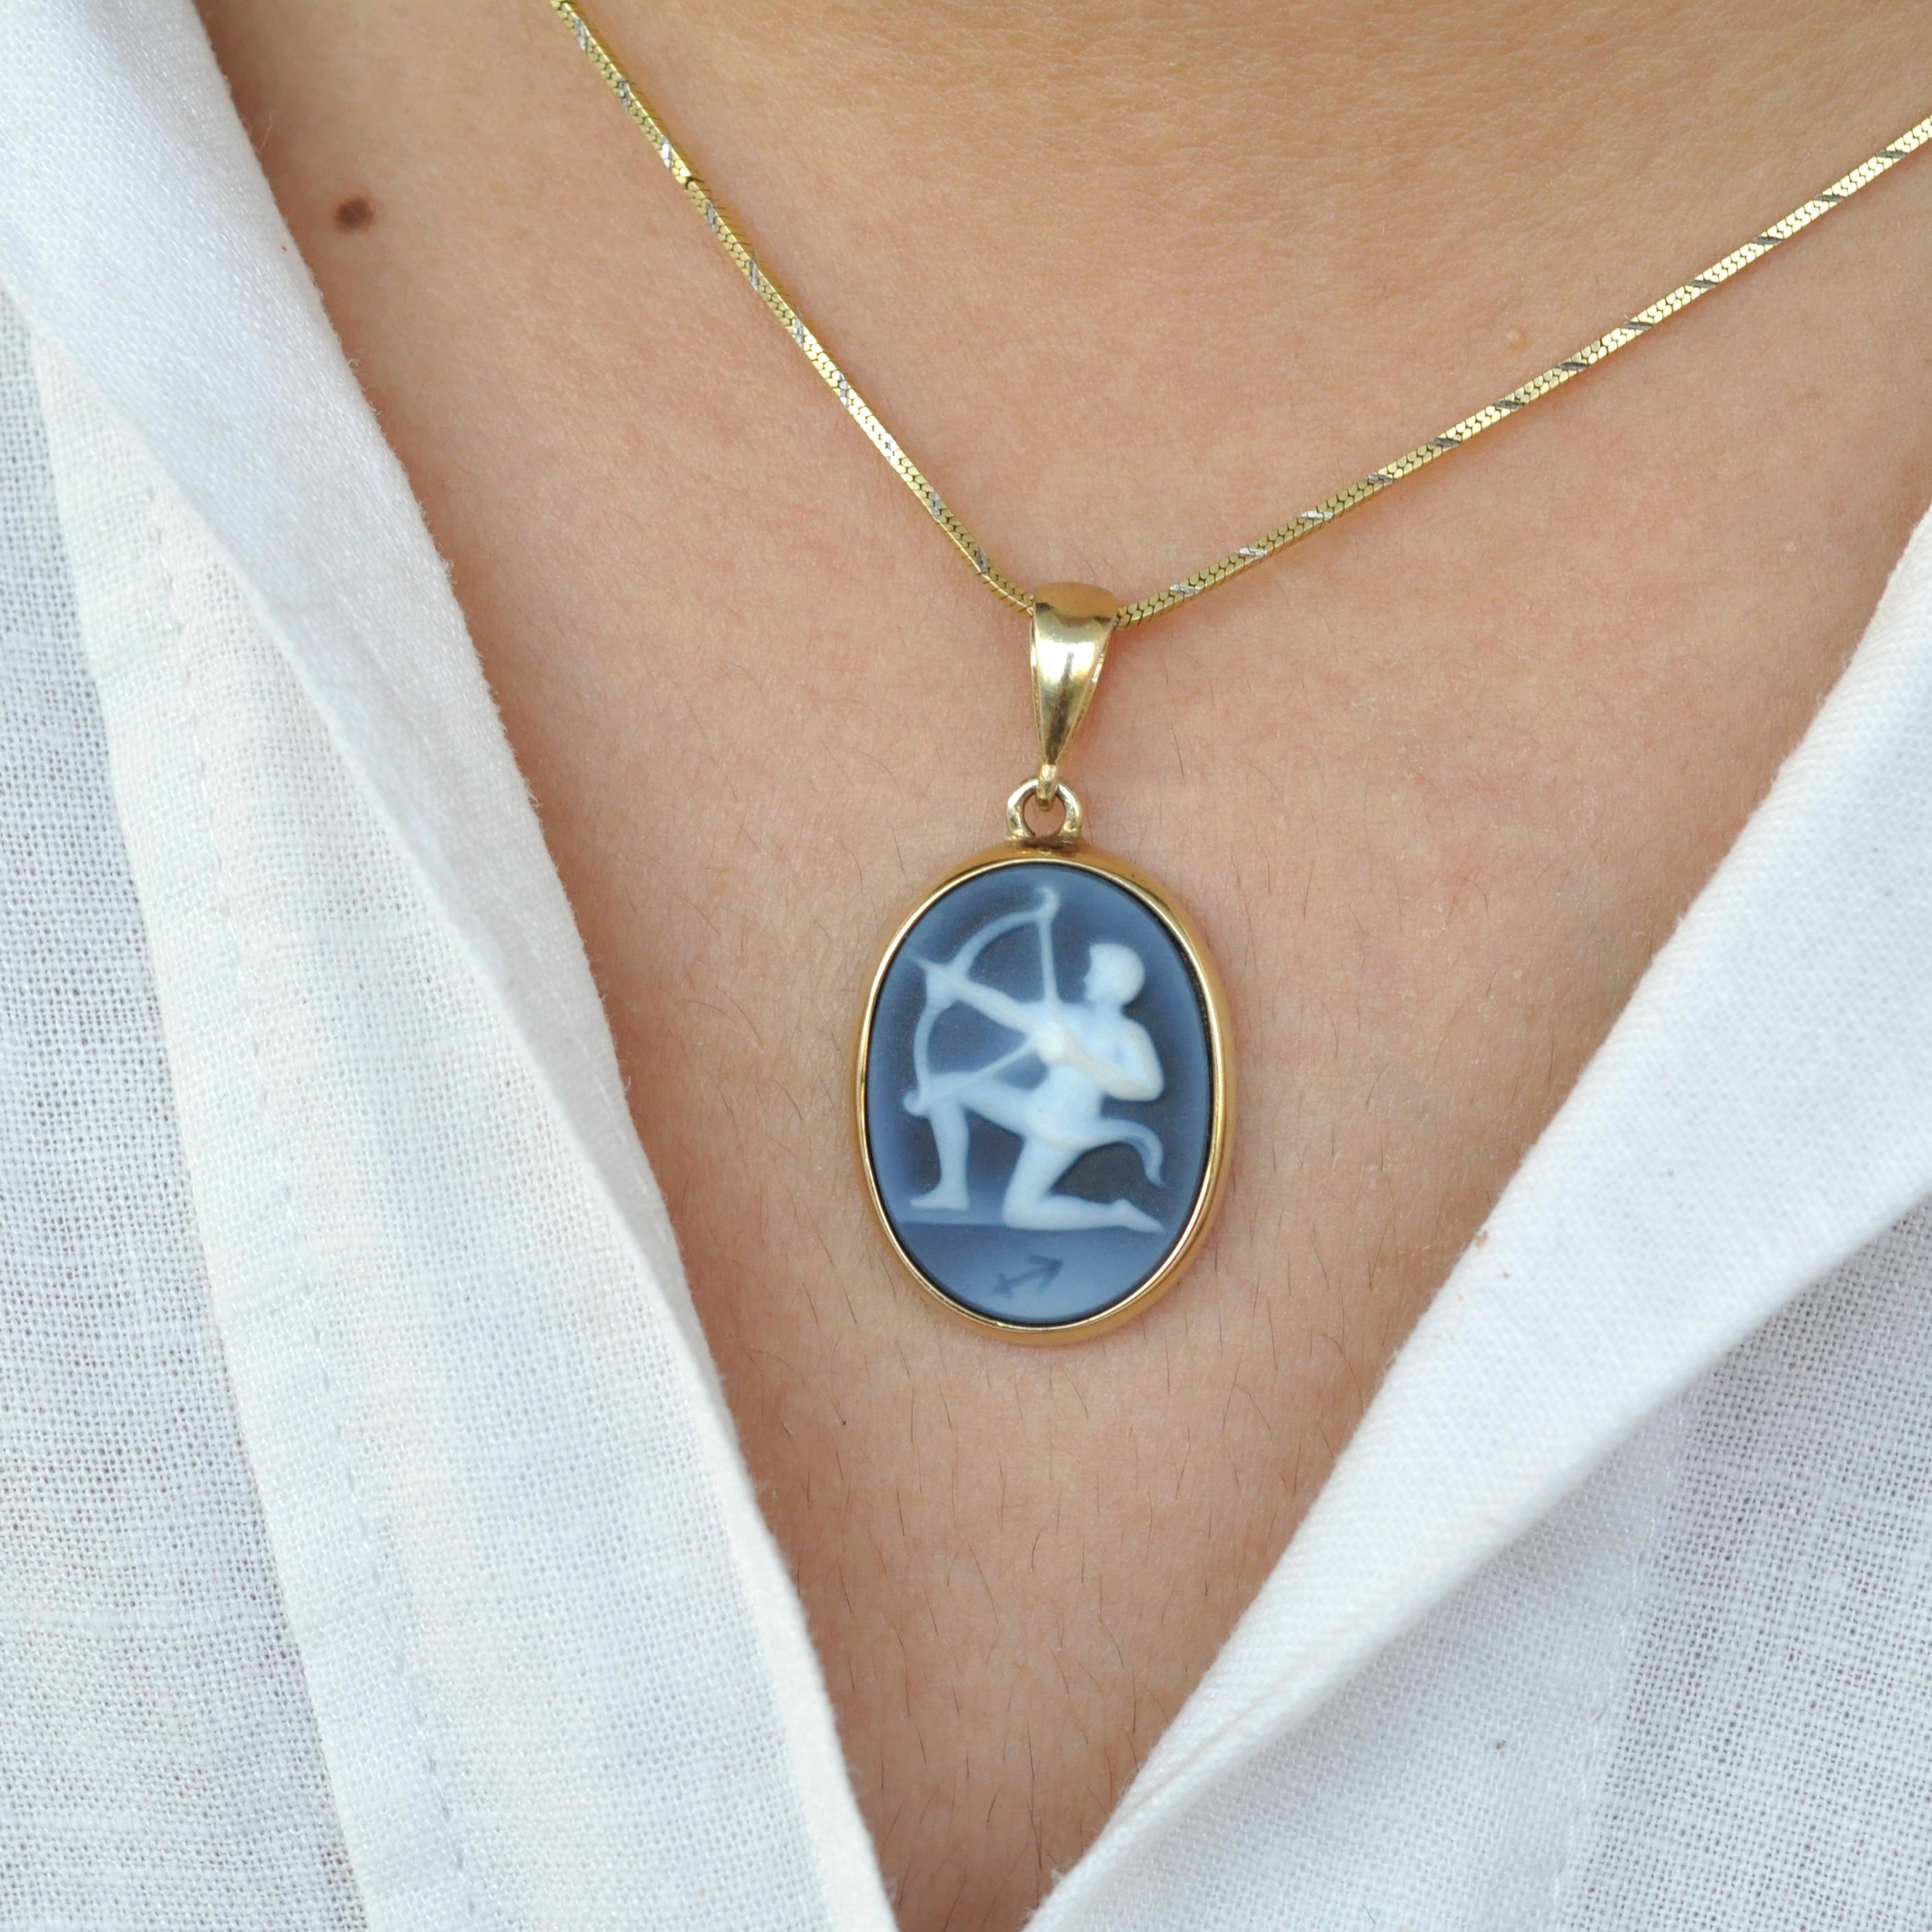 Voici le collier à pendentif camée sculpté du zodiaque Sagittarius de notre Collection Zodiac. Ce collier est orné d'un camée remarquable, méticuleusement créé par un expert en gravure de camées en Allemagne. Le camée est habilement sculpté sur un